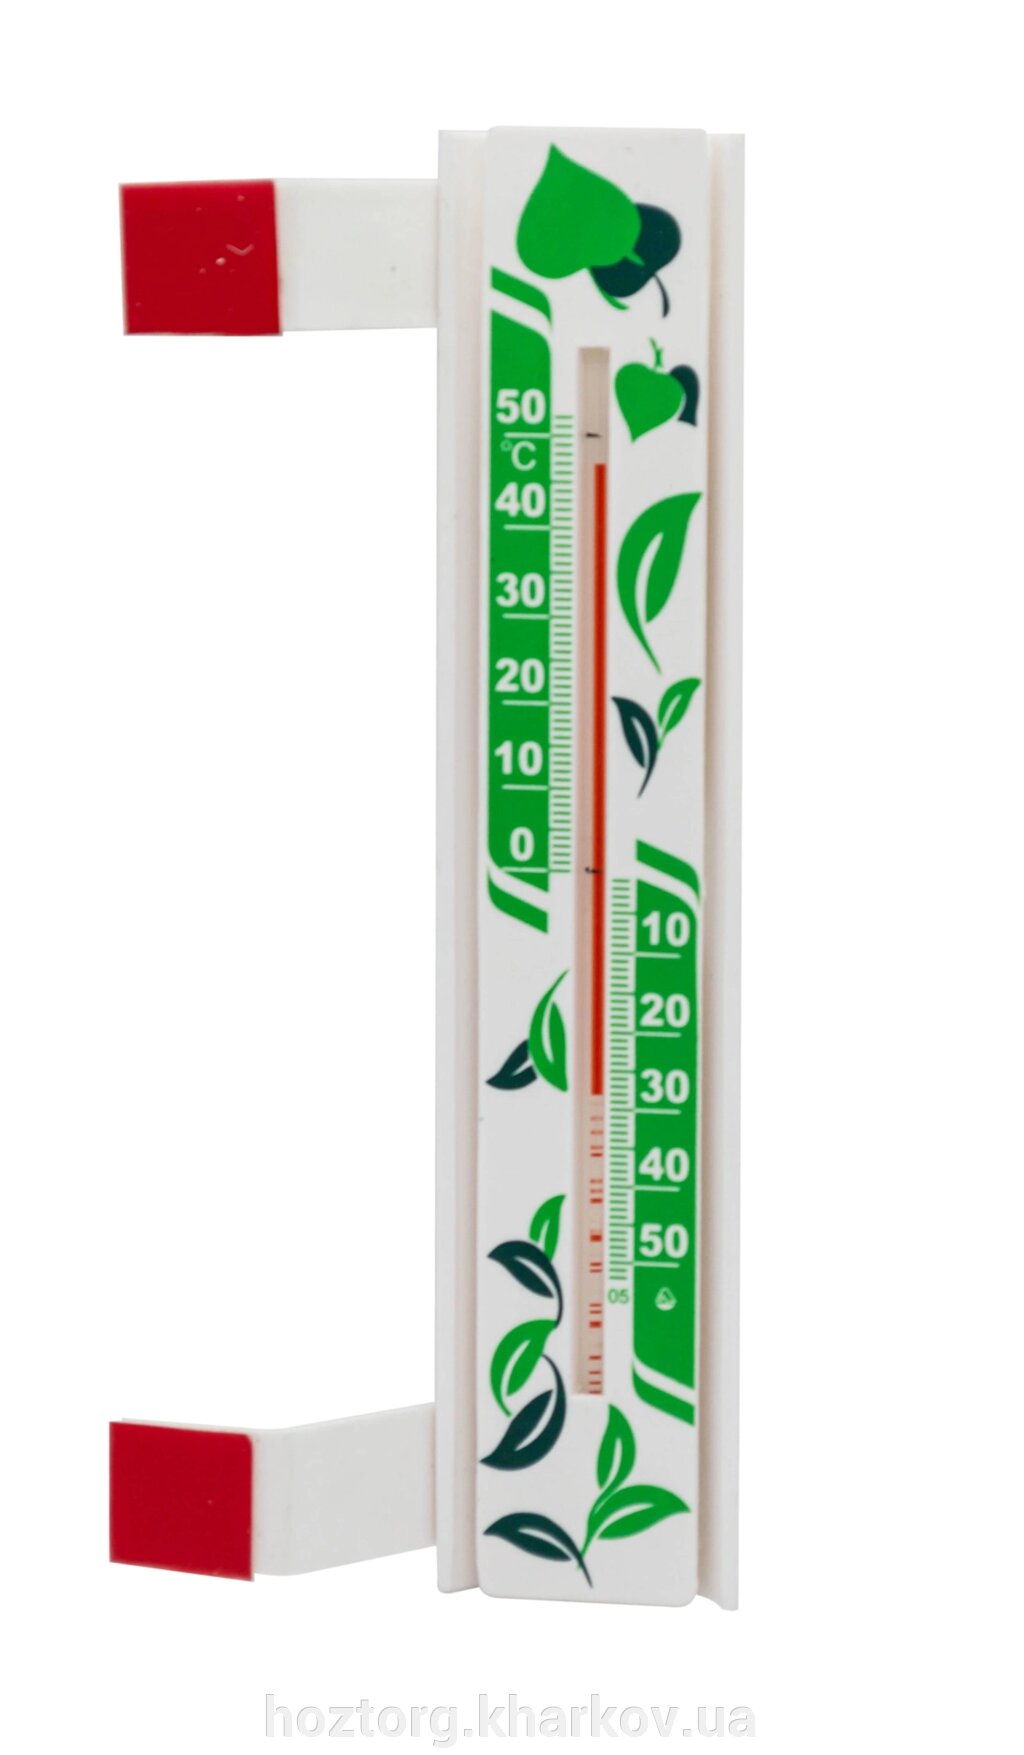 Термометр спиртовий віконний Сонячна парасолька (Склоприлад) +50-50 °C від компанії Інтернет-магазин Хозторг Харків. Господарські товари оптом - фото 1